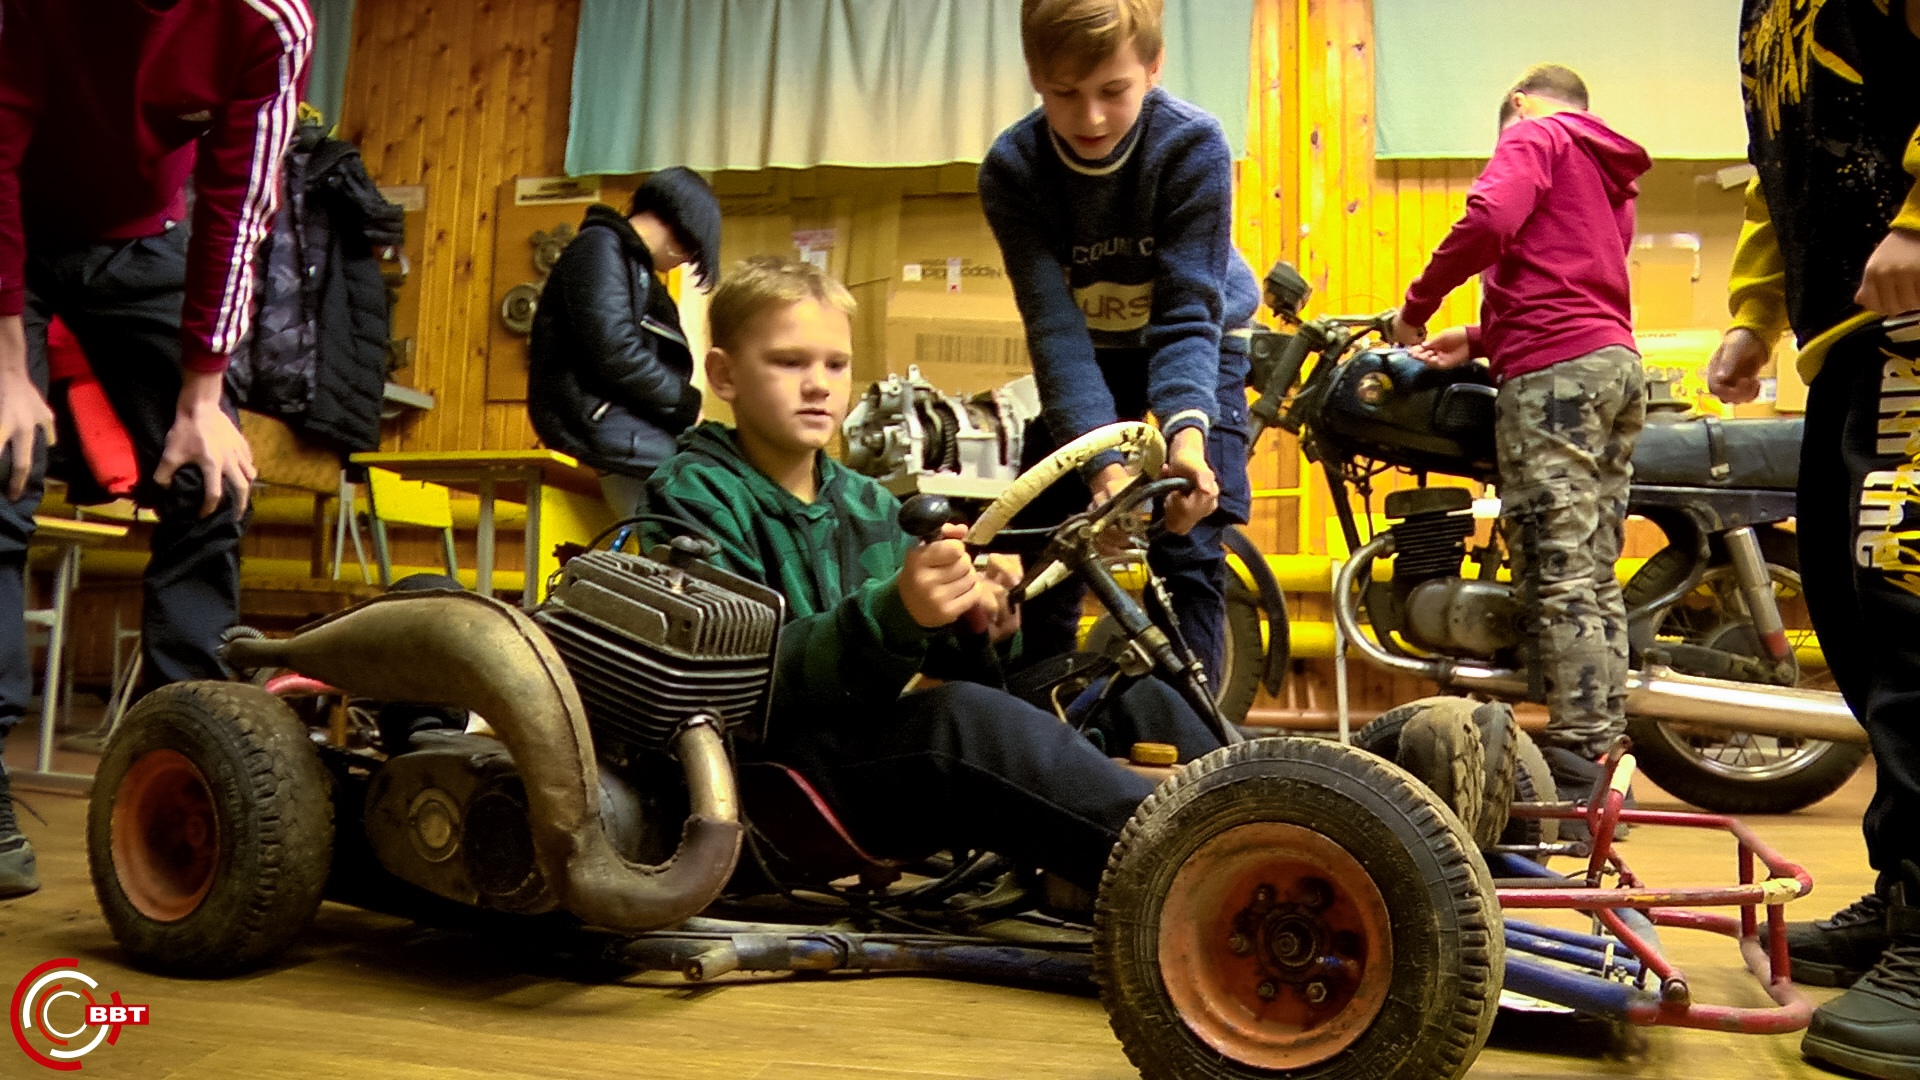 МотоЦиклы: Дети из технических кружков Тверской области отправятся на масштабную мотовыставку